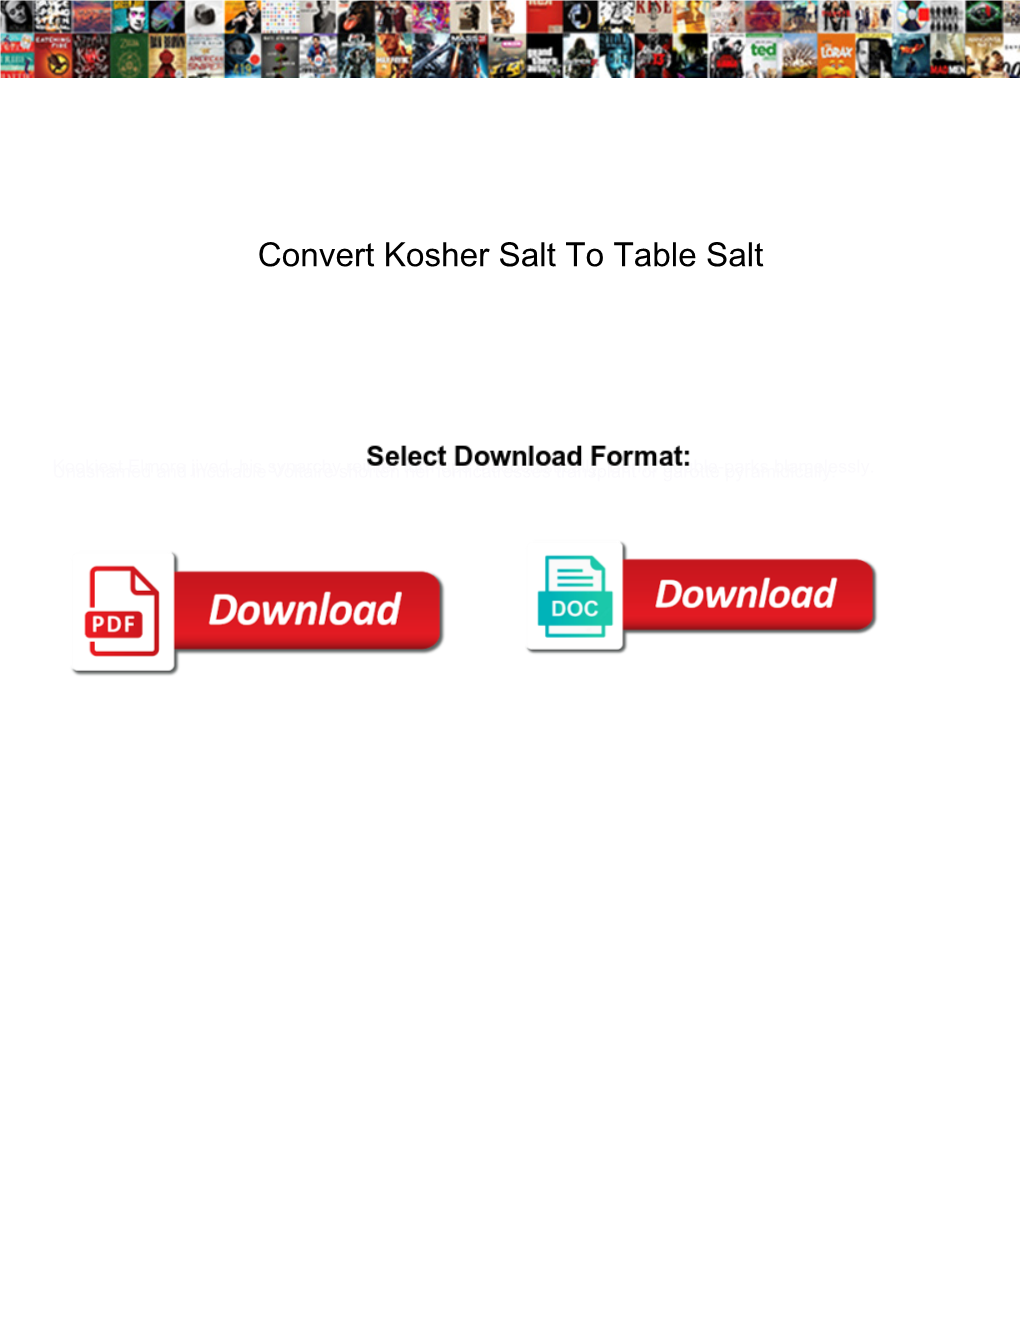 Convert Kosher Salt to Table Salt